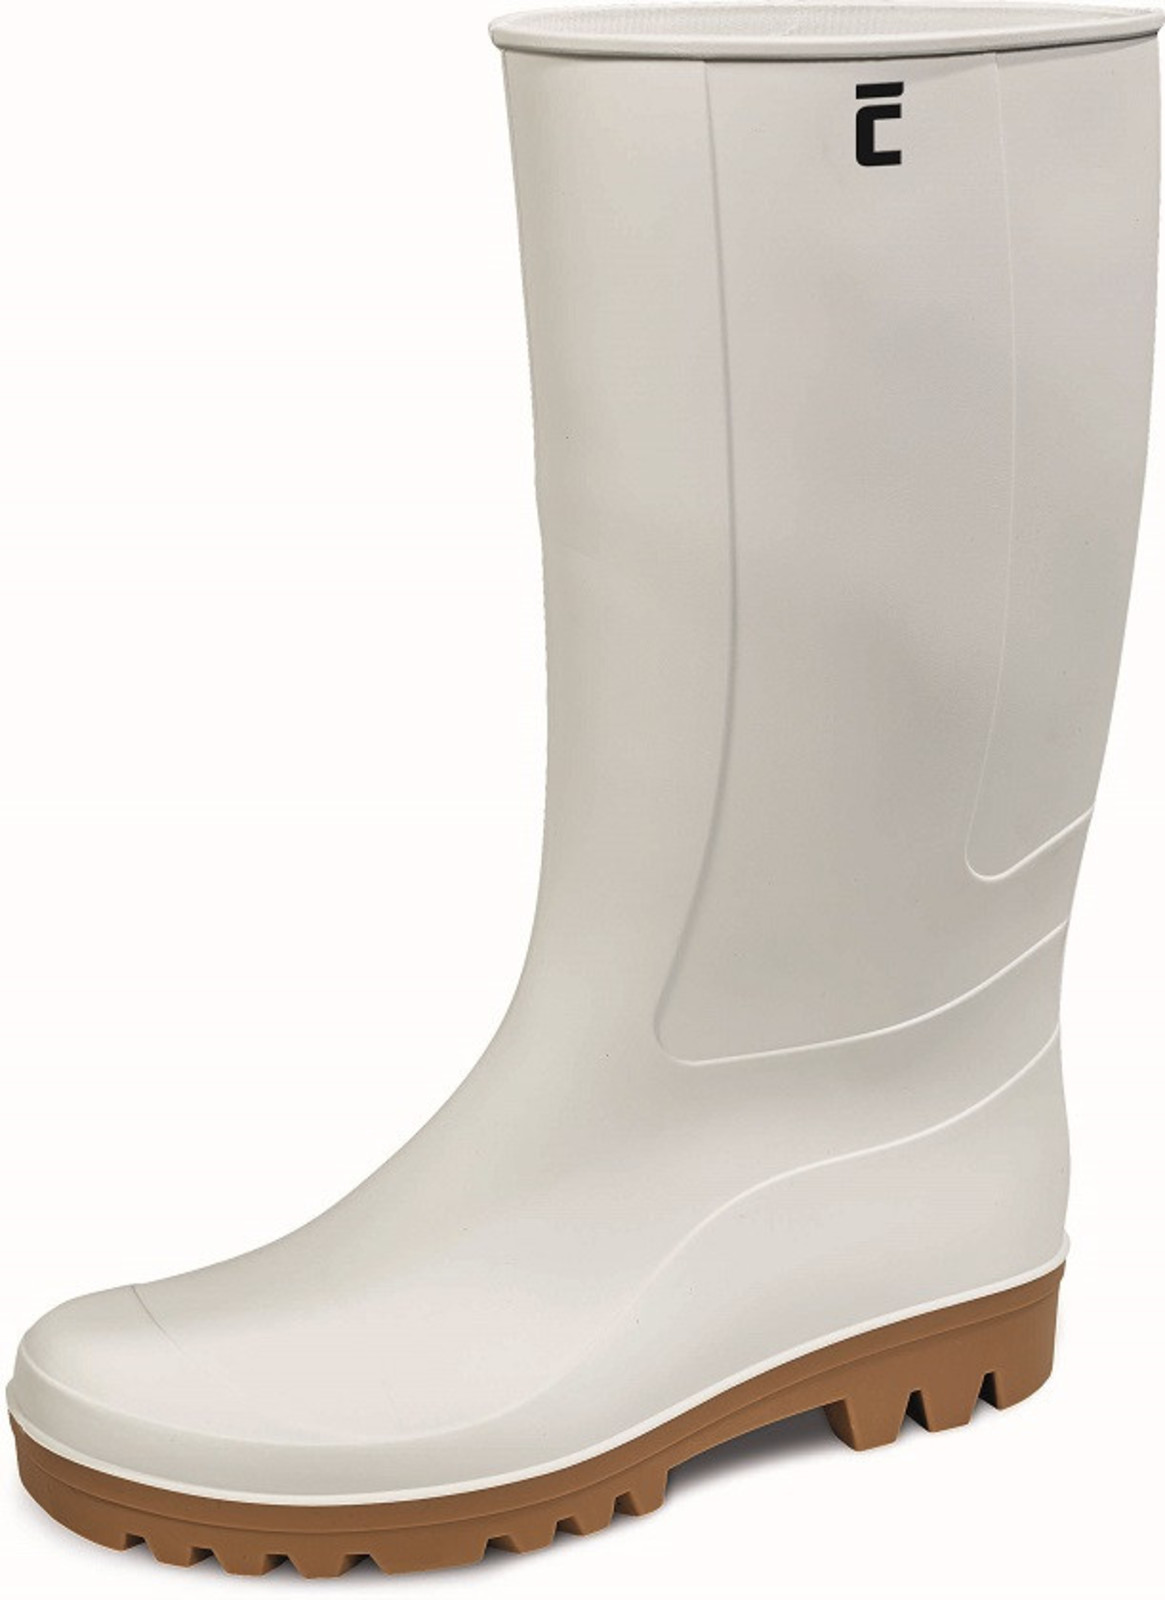 Gumáky Boots BC Food O4  - veľkosť: 48, farba: biela